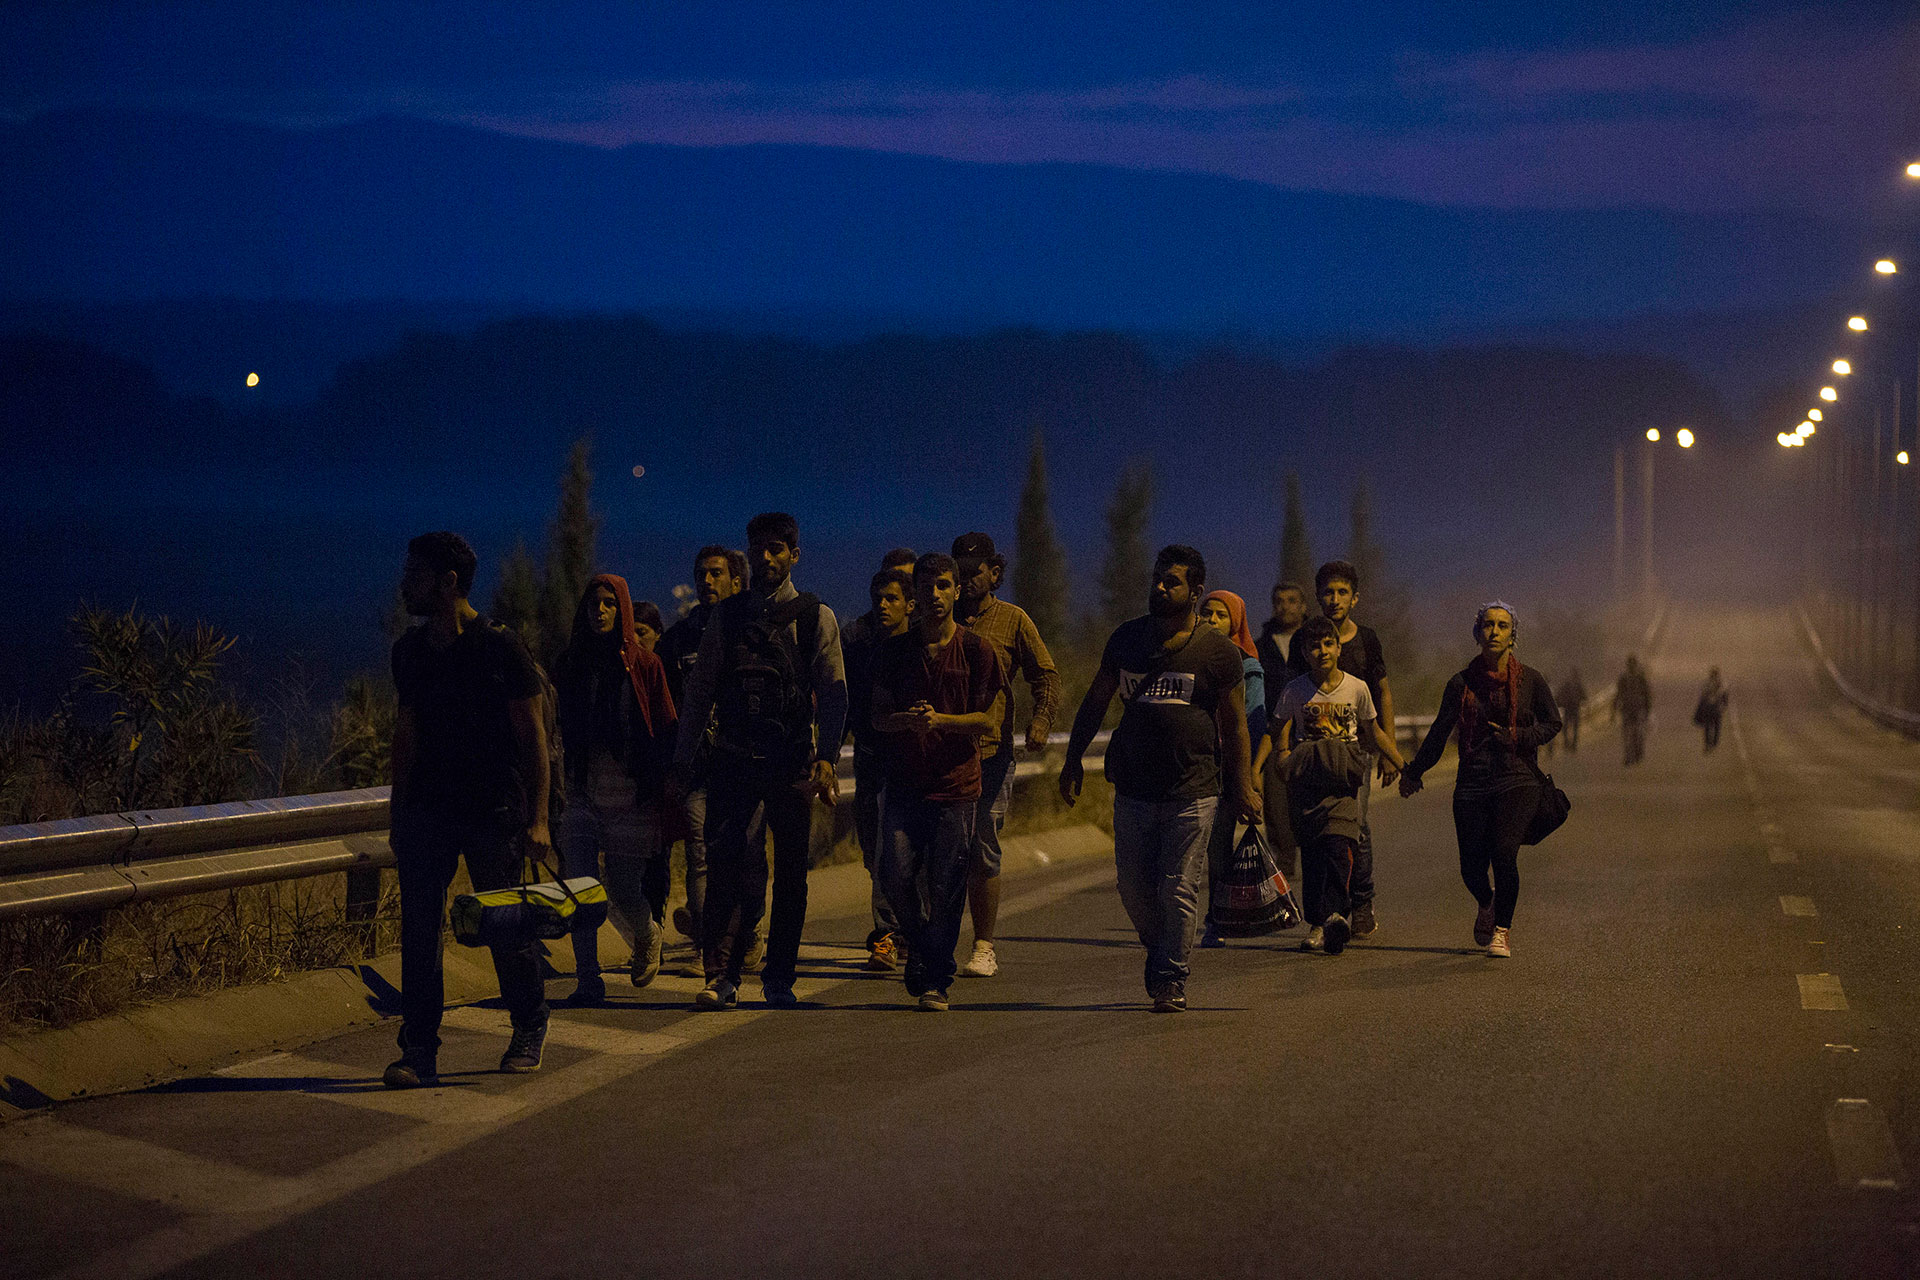 Personas refugiadas caminan por una carretera al amanecer en Idomeni, Grecia, en dirección a la frontera con Macedonia, situada a unos pocos kilómetros de distancia. (Idomeni. Grecia. 08/25/2015).